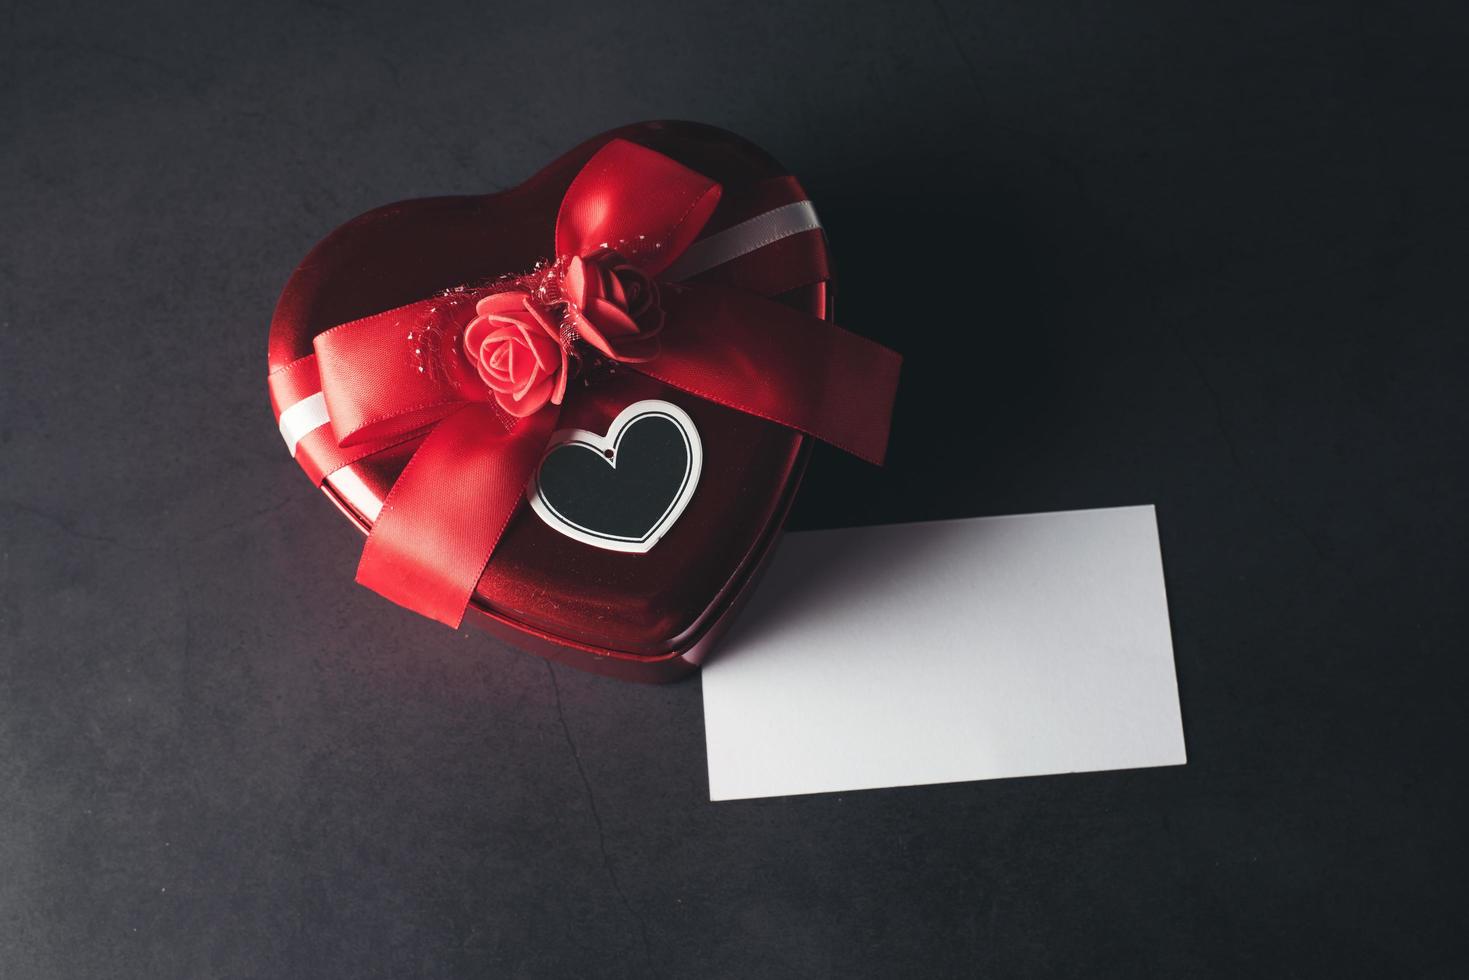 coffret cadeau en forme de coeur avec carte de note vierge, saint valentin. photo